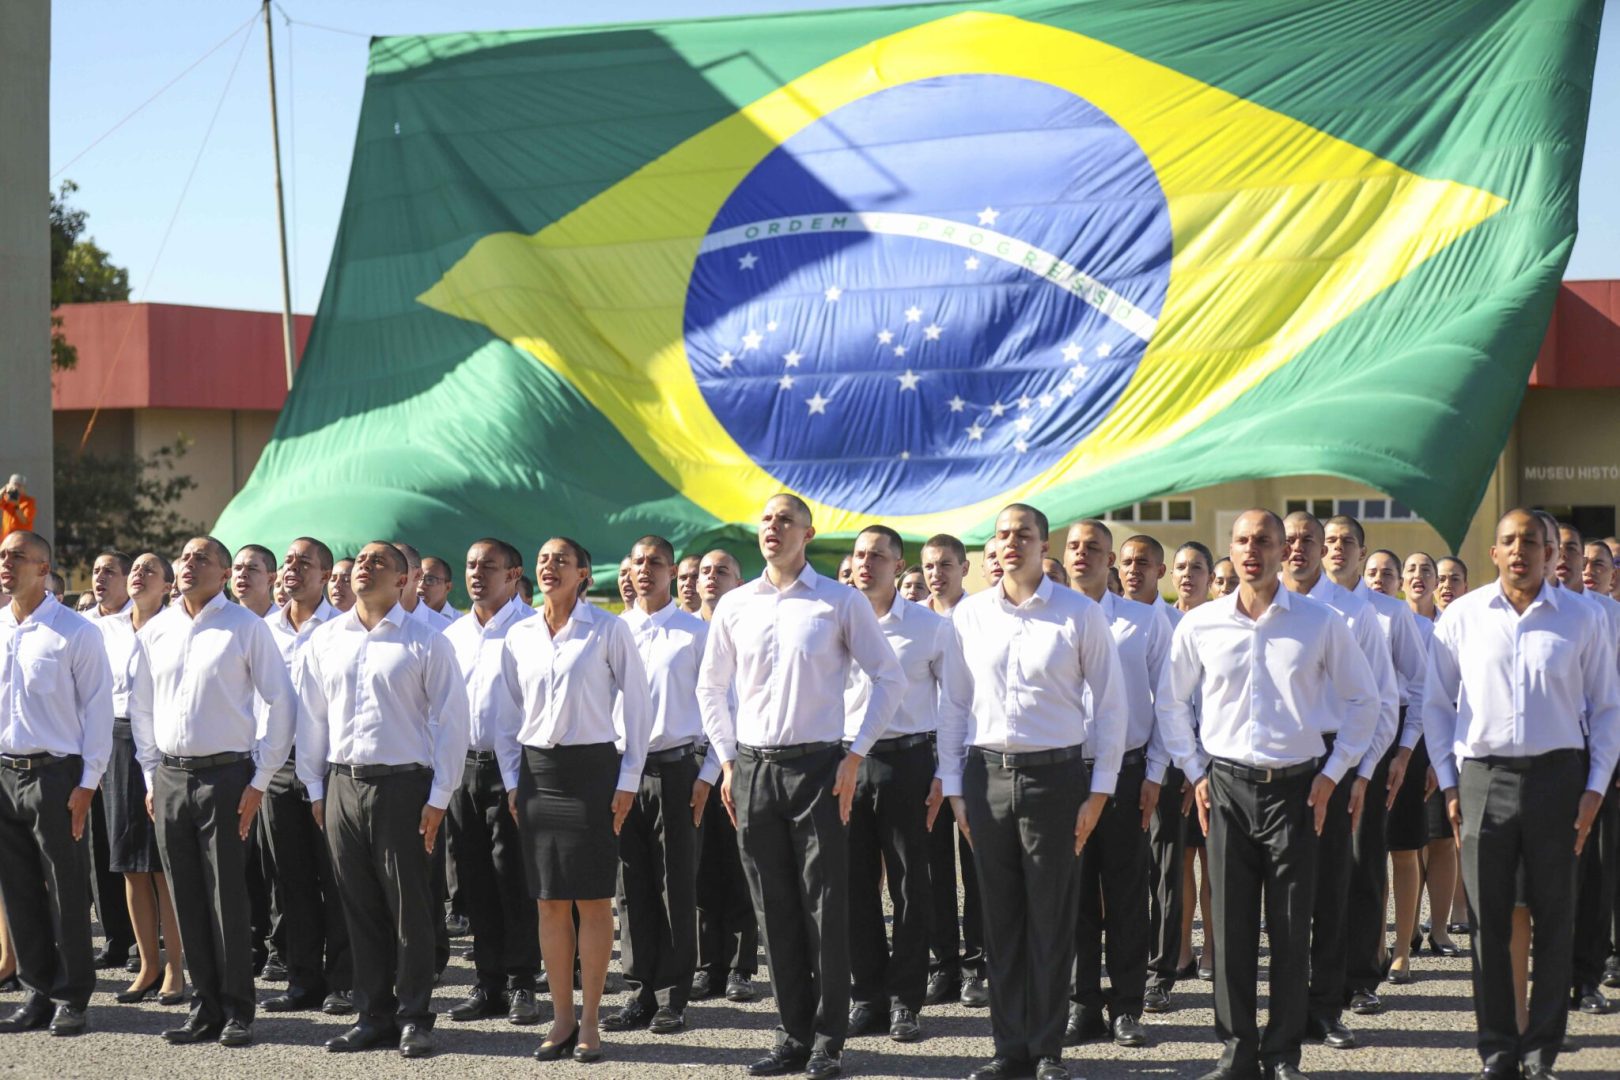 Novos profissionais se distribuem entre 310 praças, 22 oficiais e 23 oficiais combatentes | Foto: Renato Alves/Agência Brasília